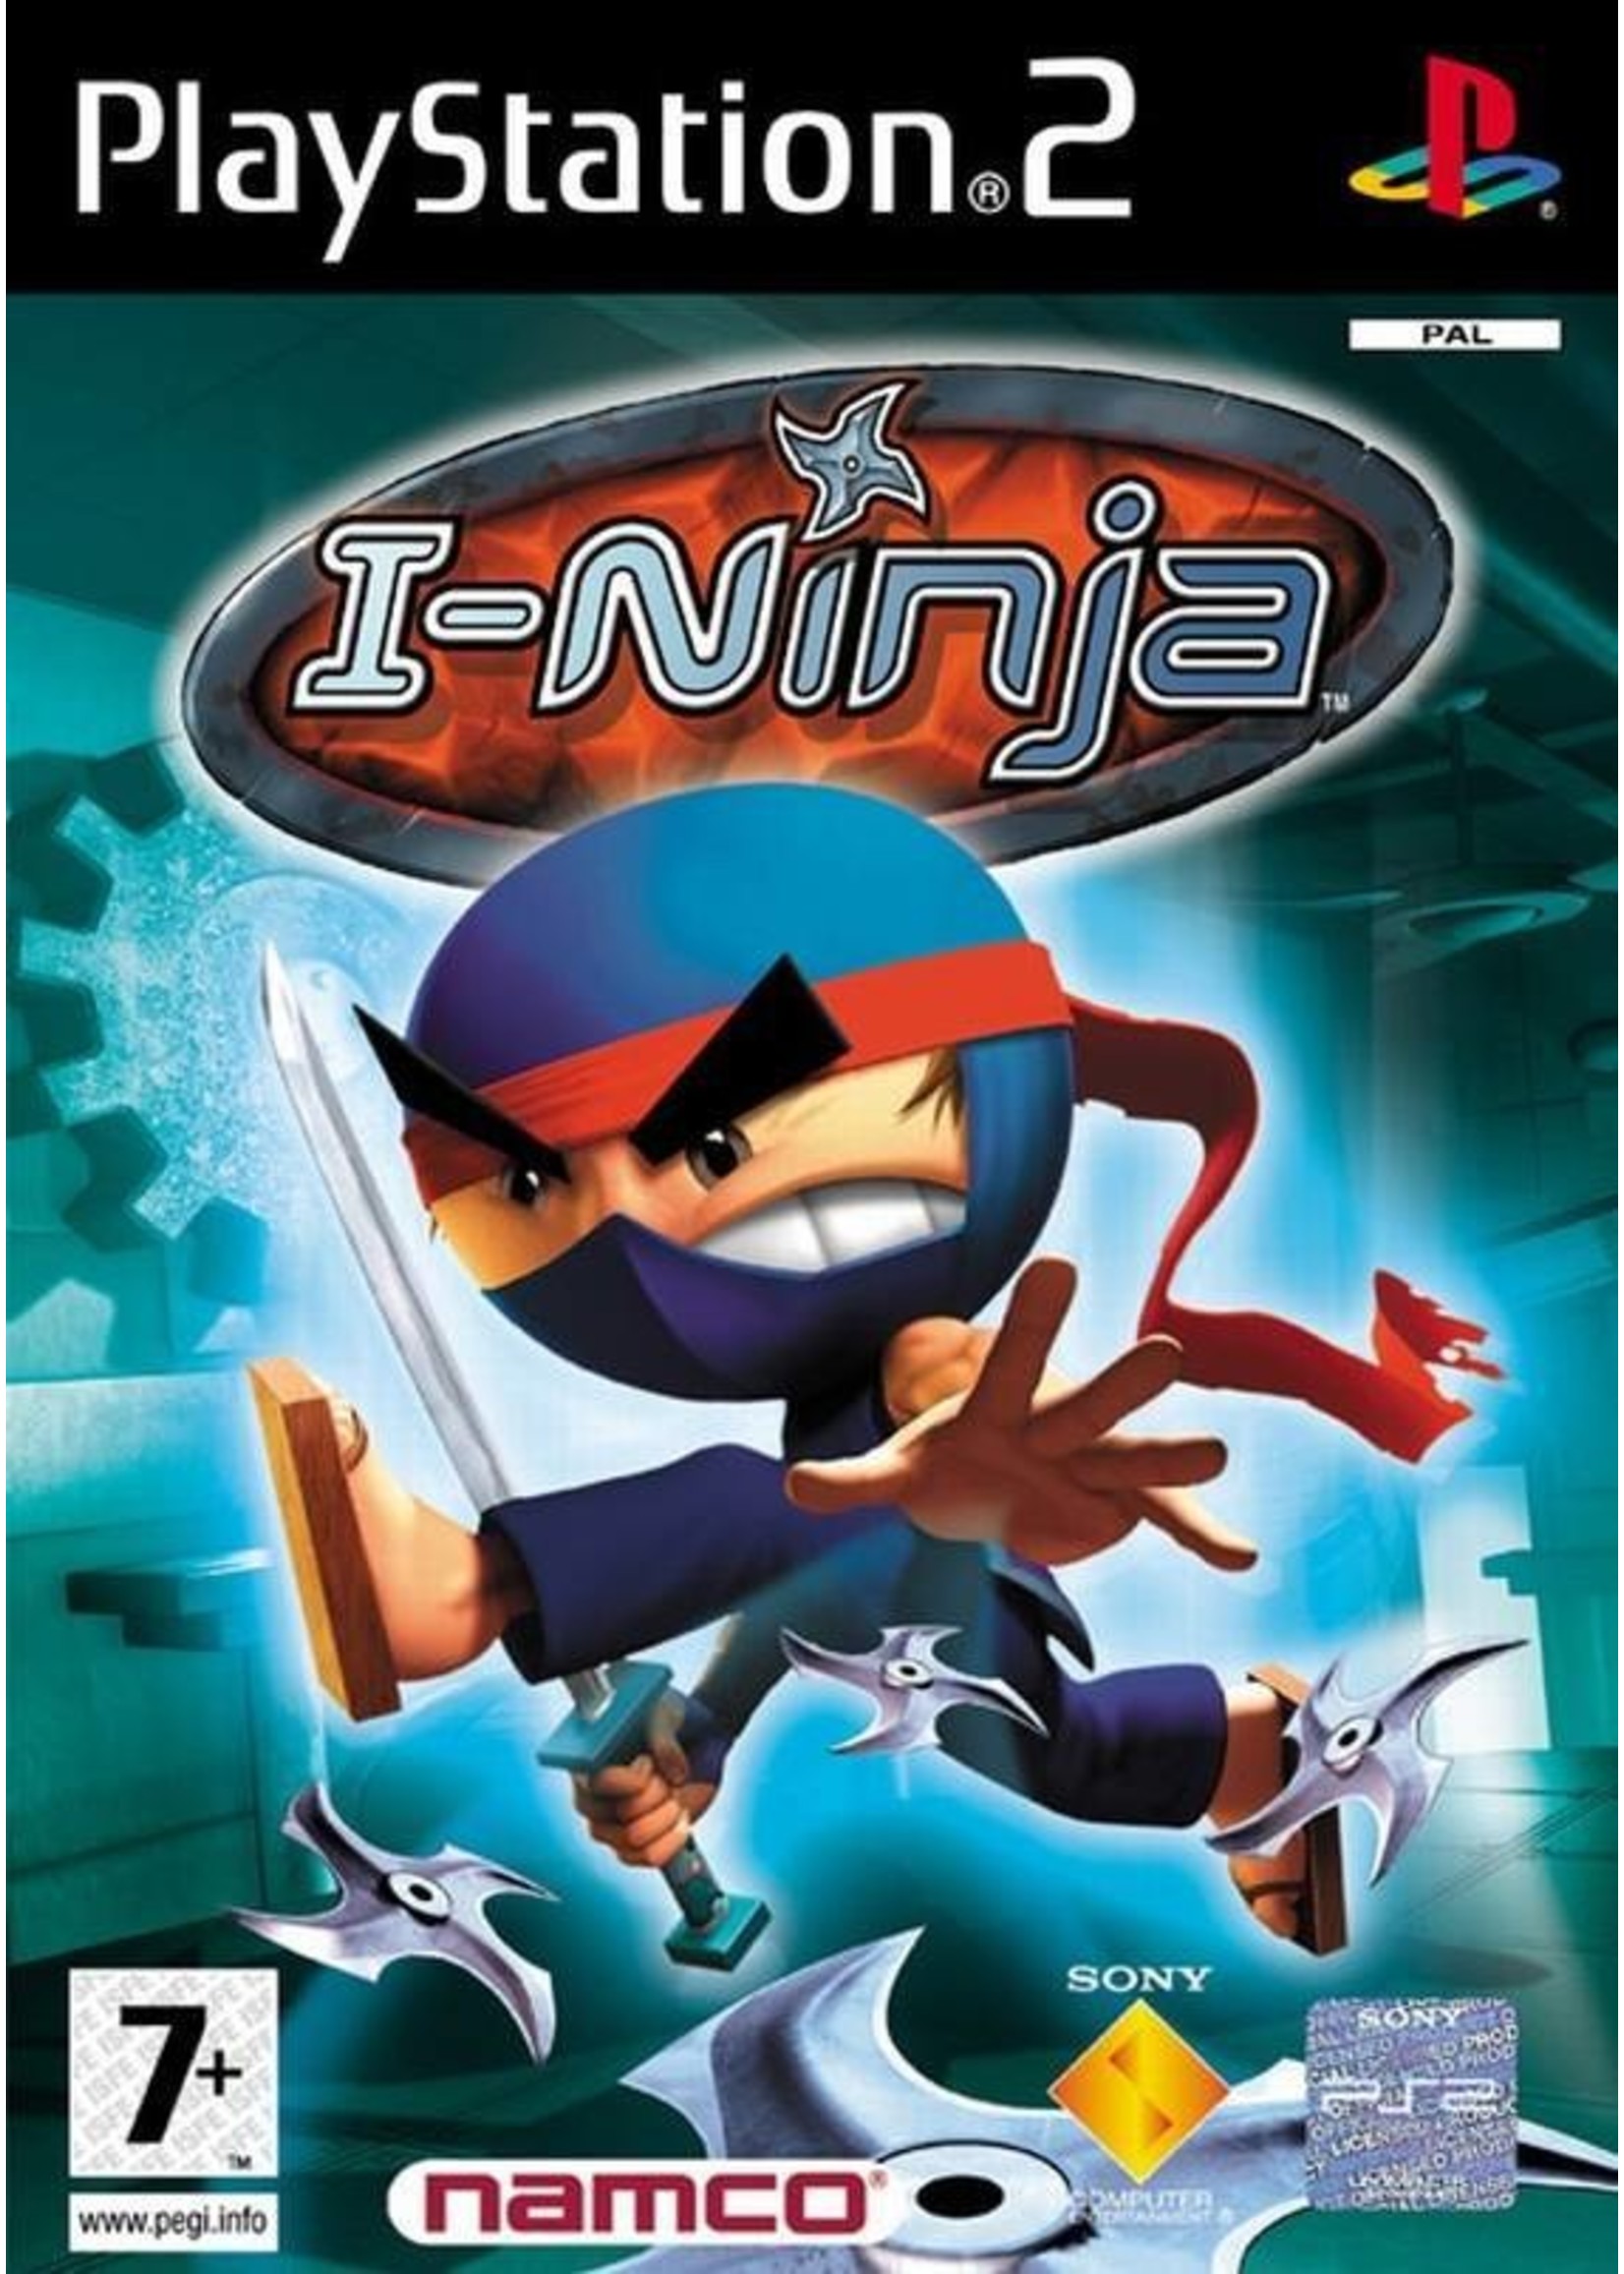 Sony Playstation 2 (PS2) I-Ninja